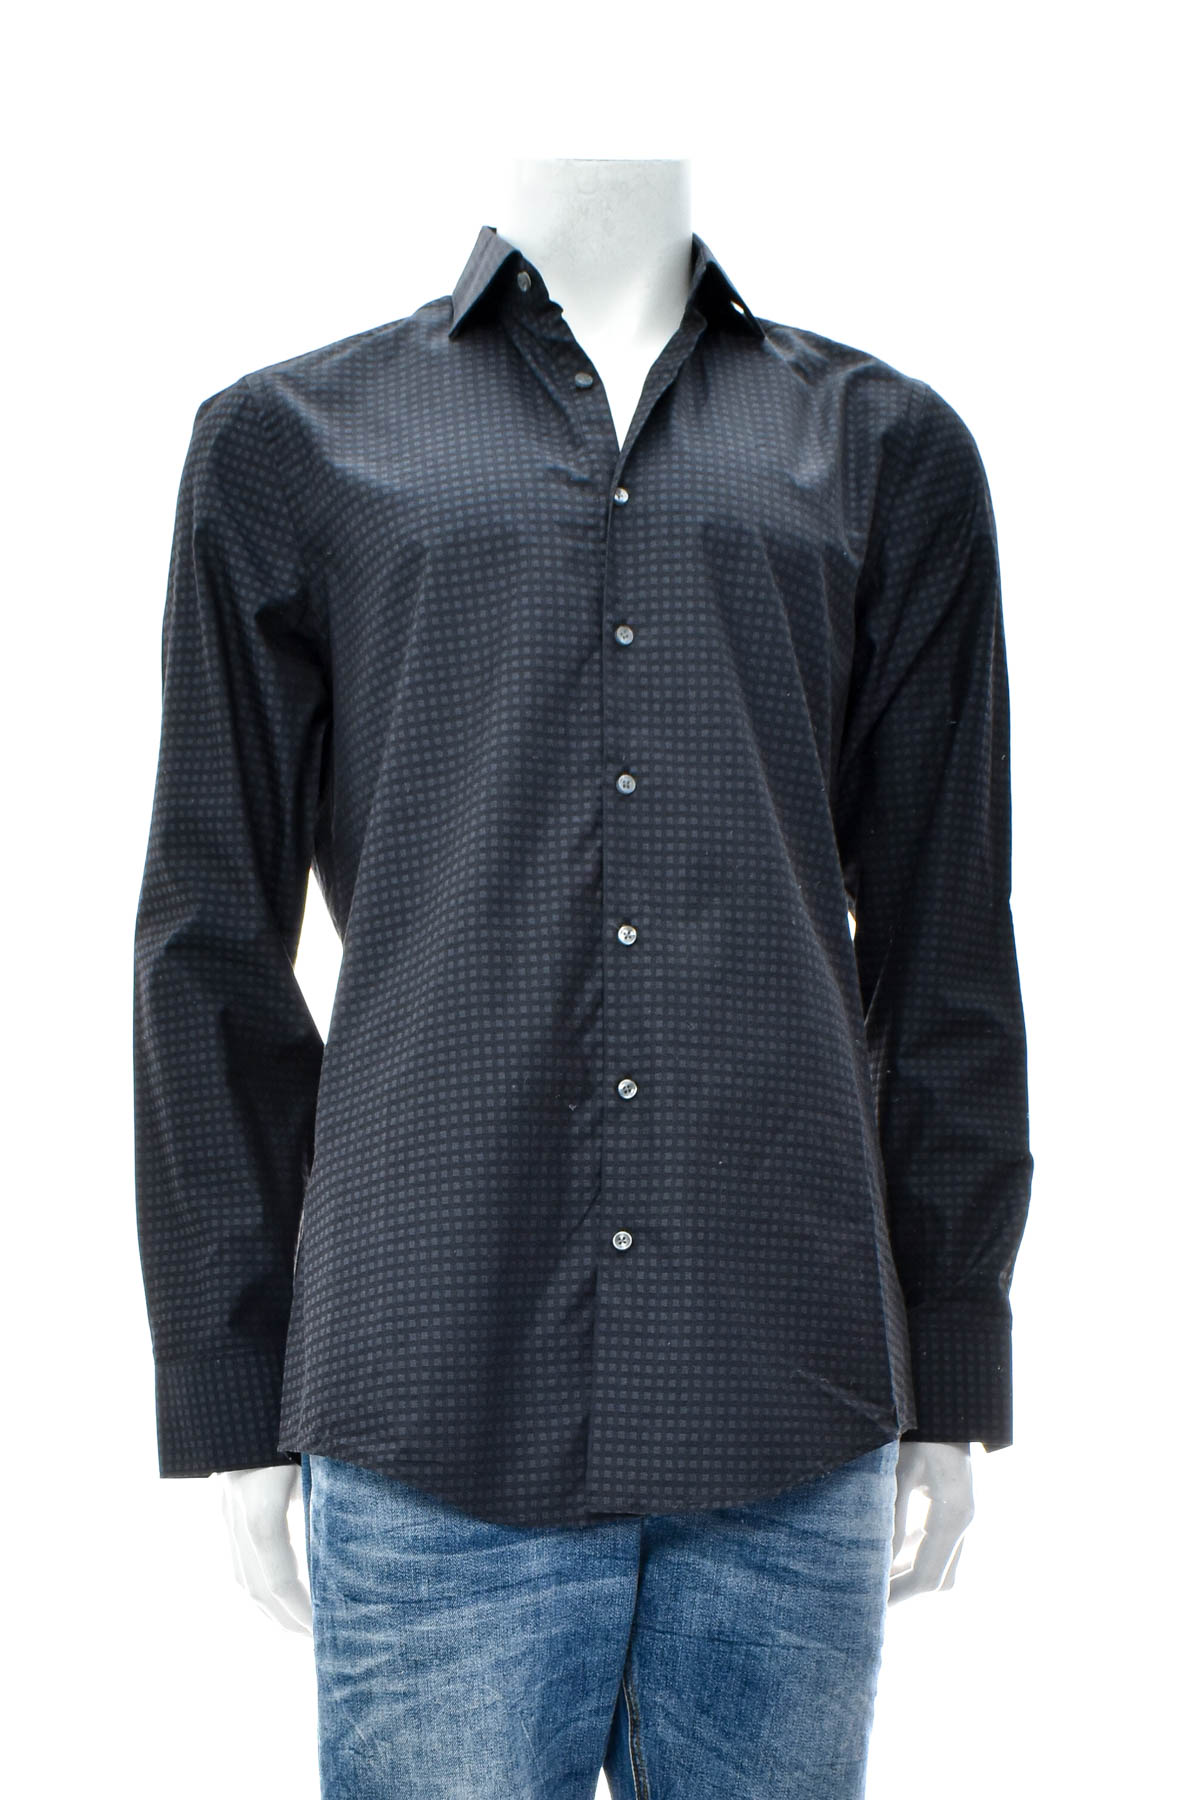 Ανδρικό πουκάμισο - ROY ROBSON - 0